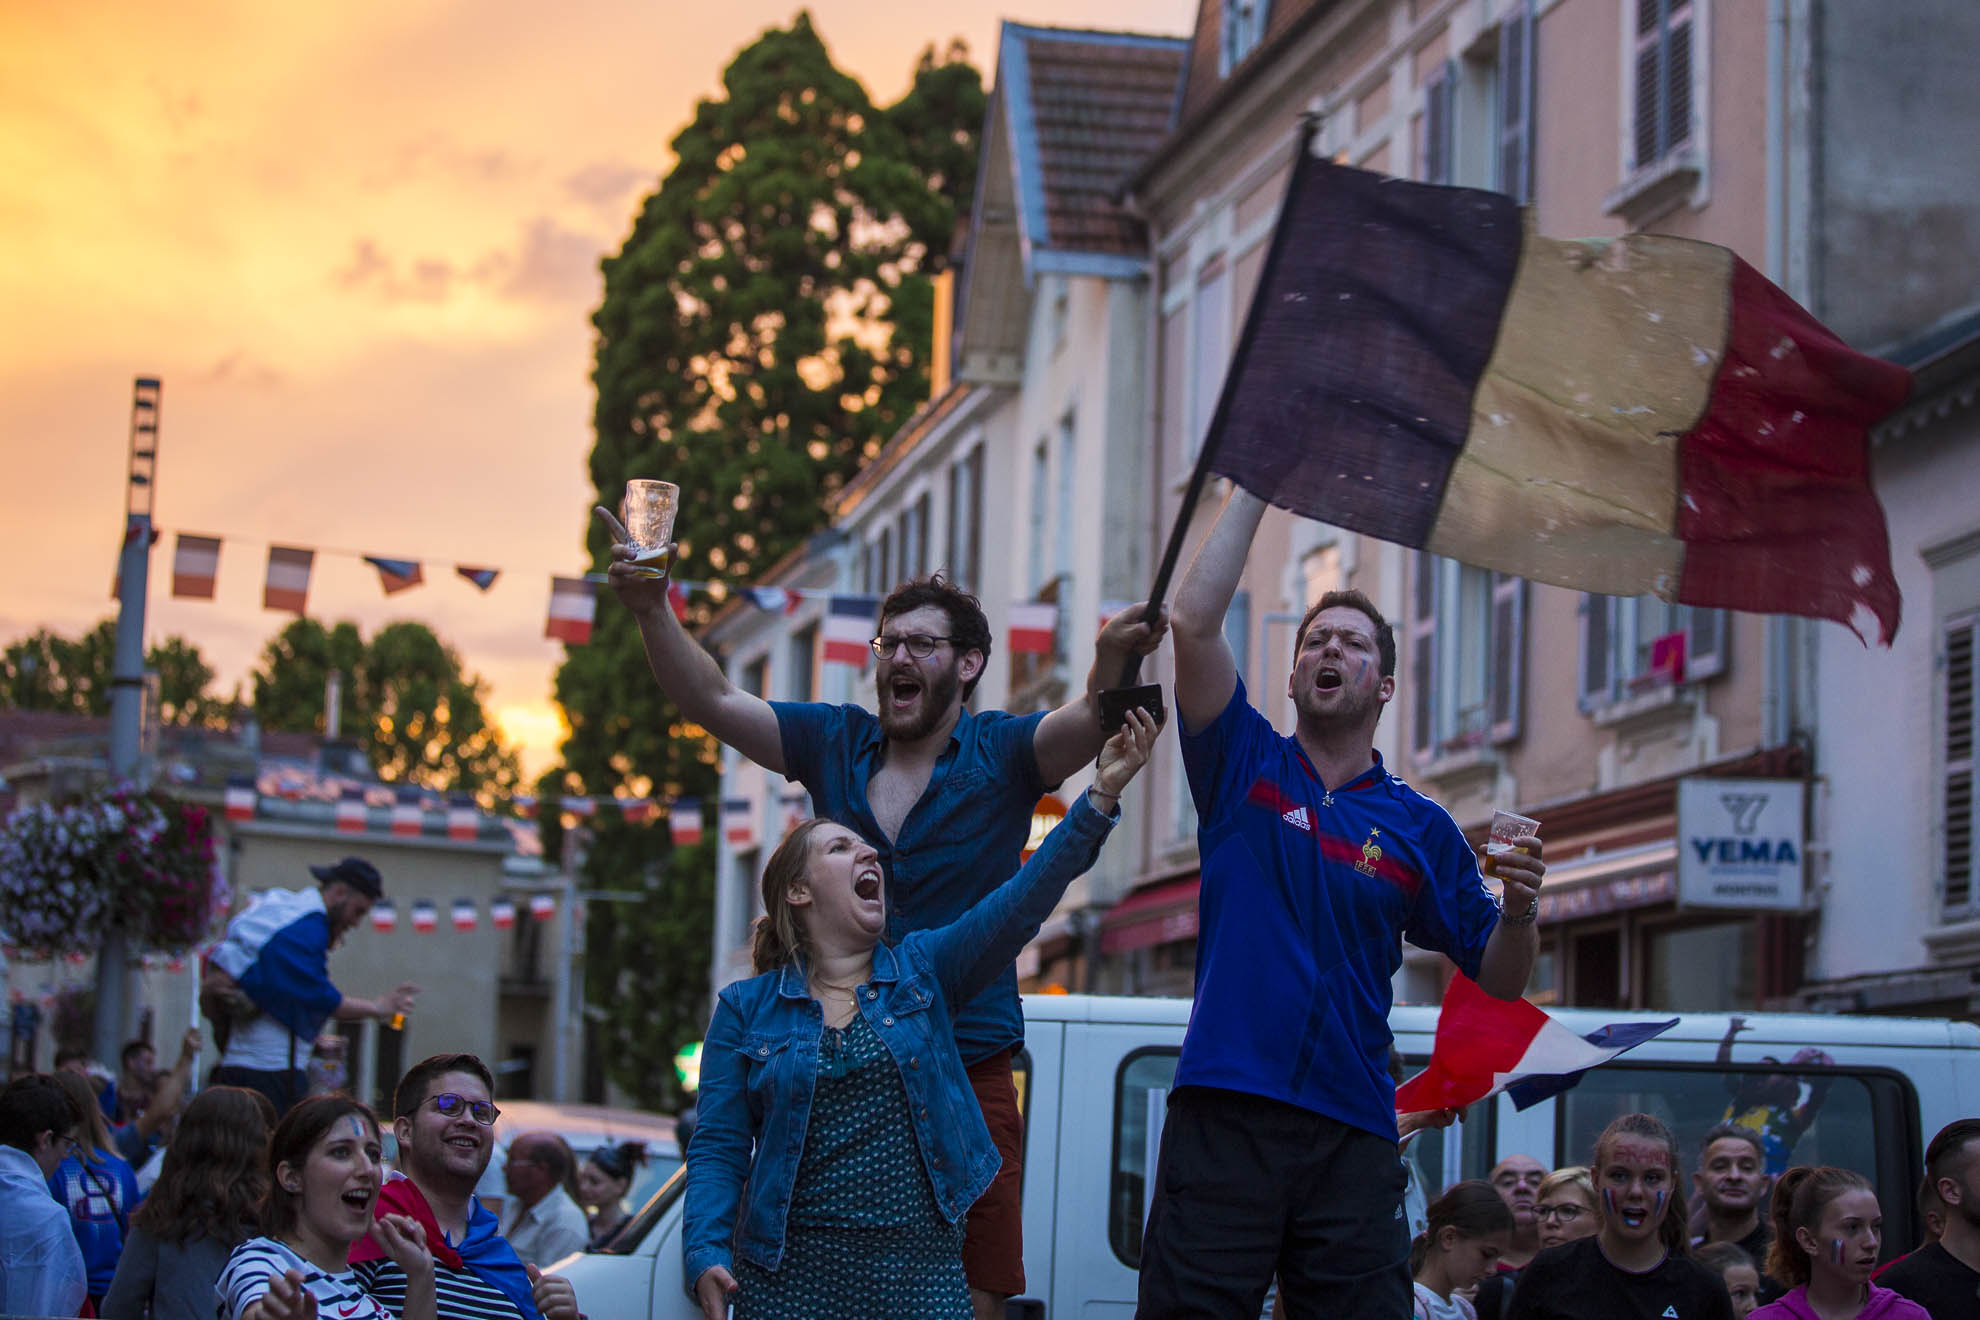 Reportage photo pendant la finale de coupe du monde à Vittel